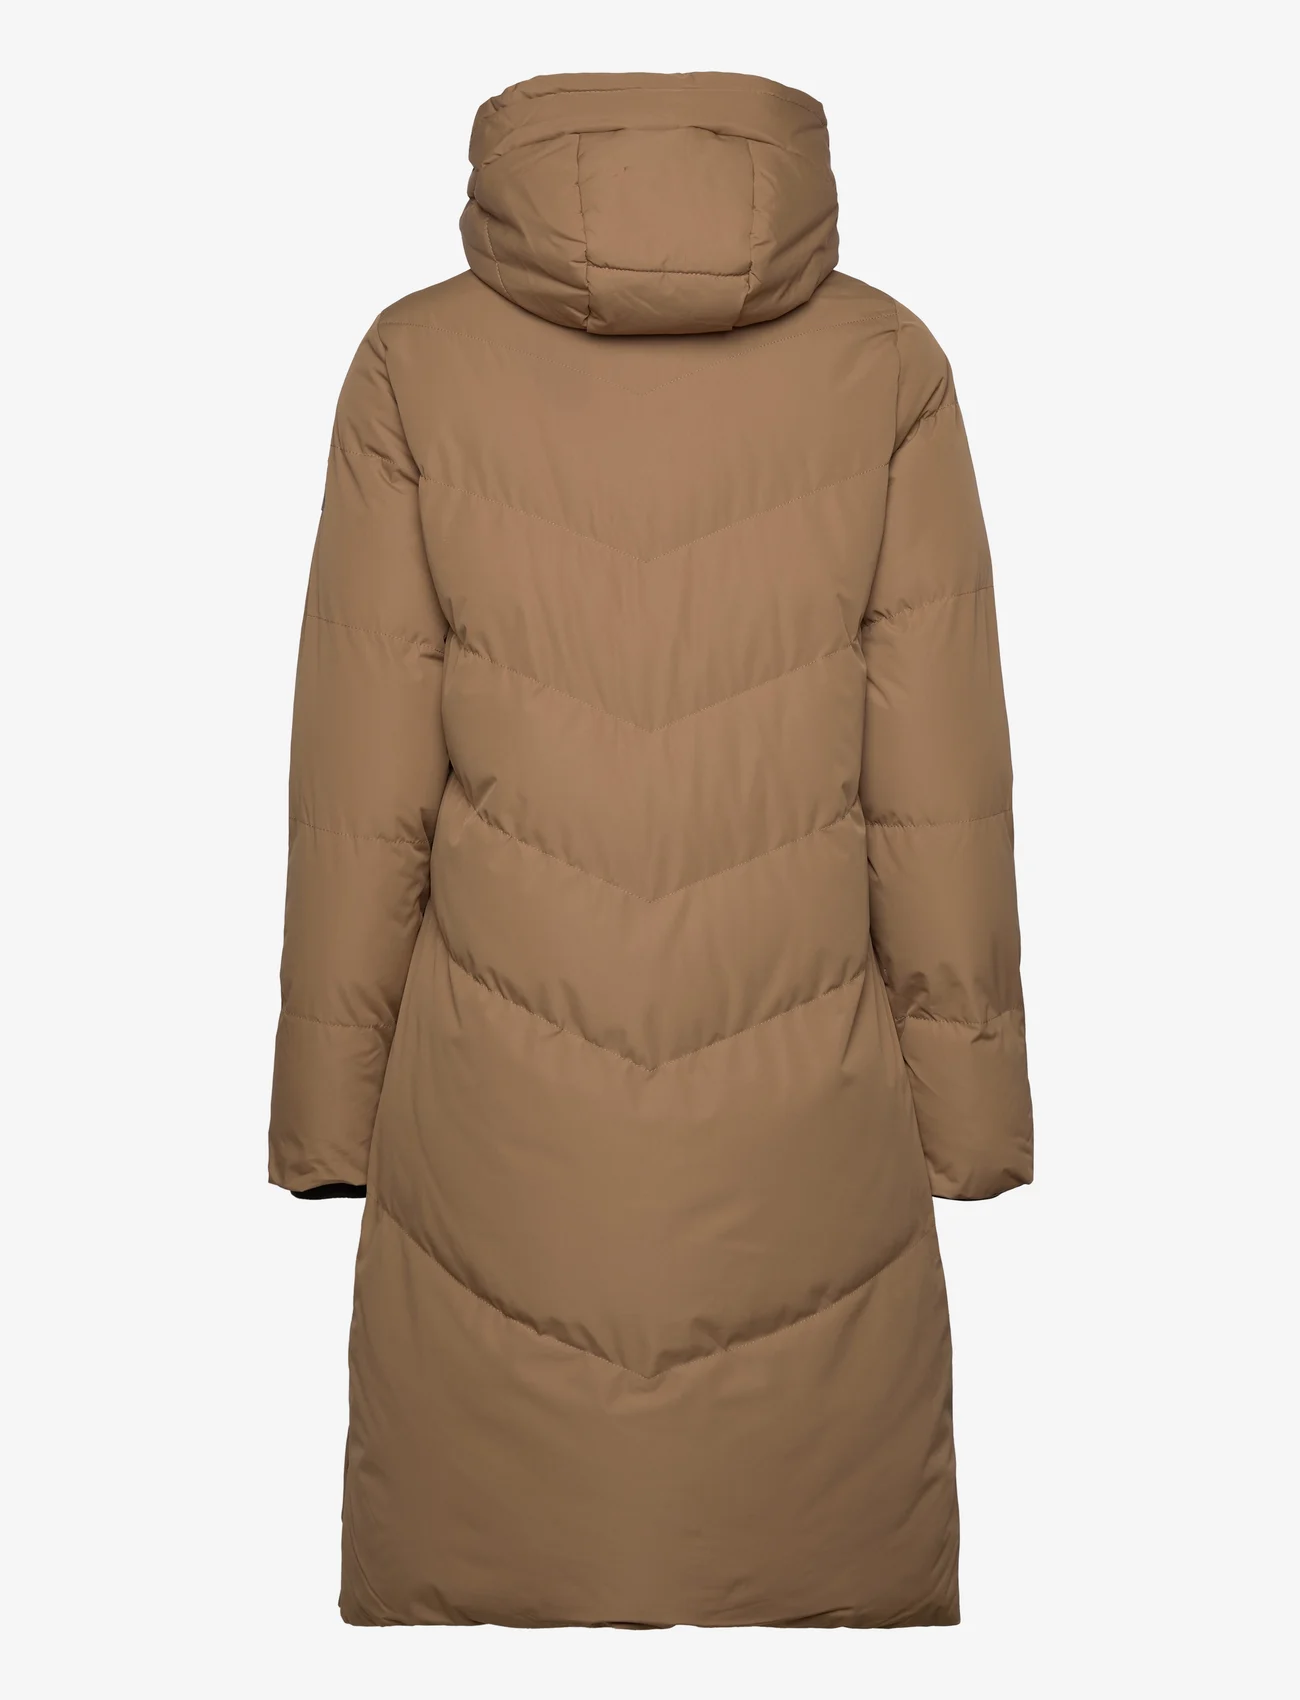 Garcia - ladies outdoor jackets - vinterjakker - brown - 1